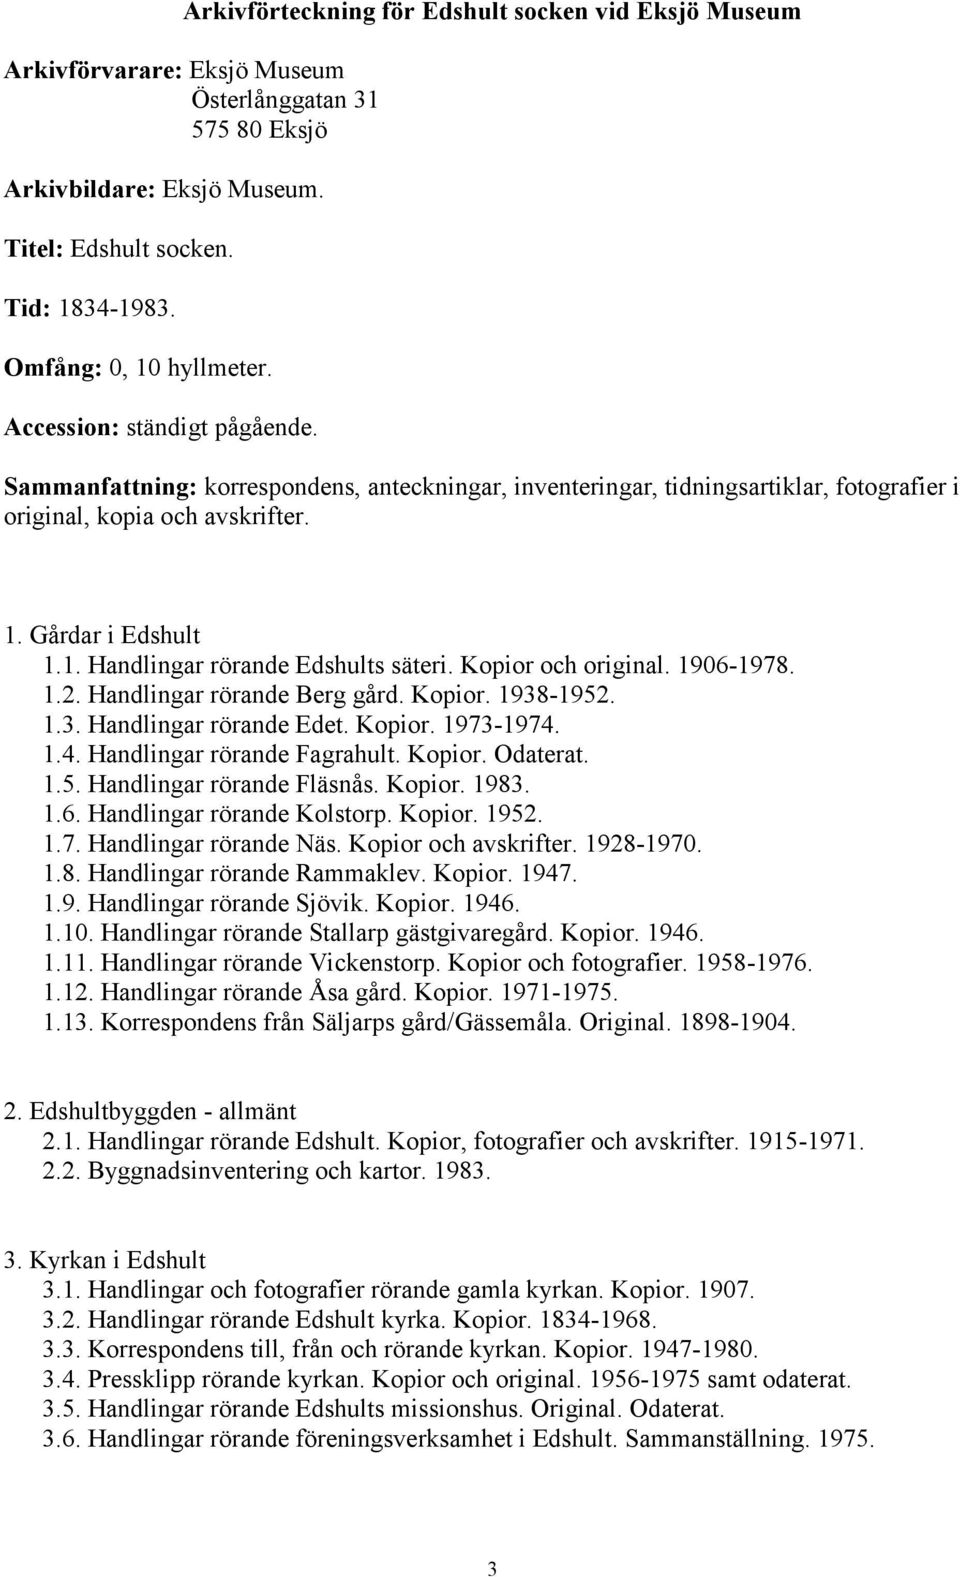 1. Handlingar rörande Edshults säteri. Kopior och original. 1906-1978. 1.2. Handlingar rörande Berg gård. Kopior. 1938-1952. 1.3. Handlingar rörande Edet. Kopior. 1973-1974.